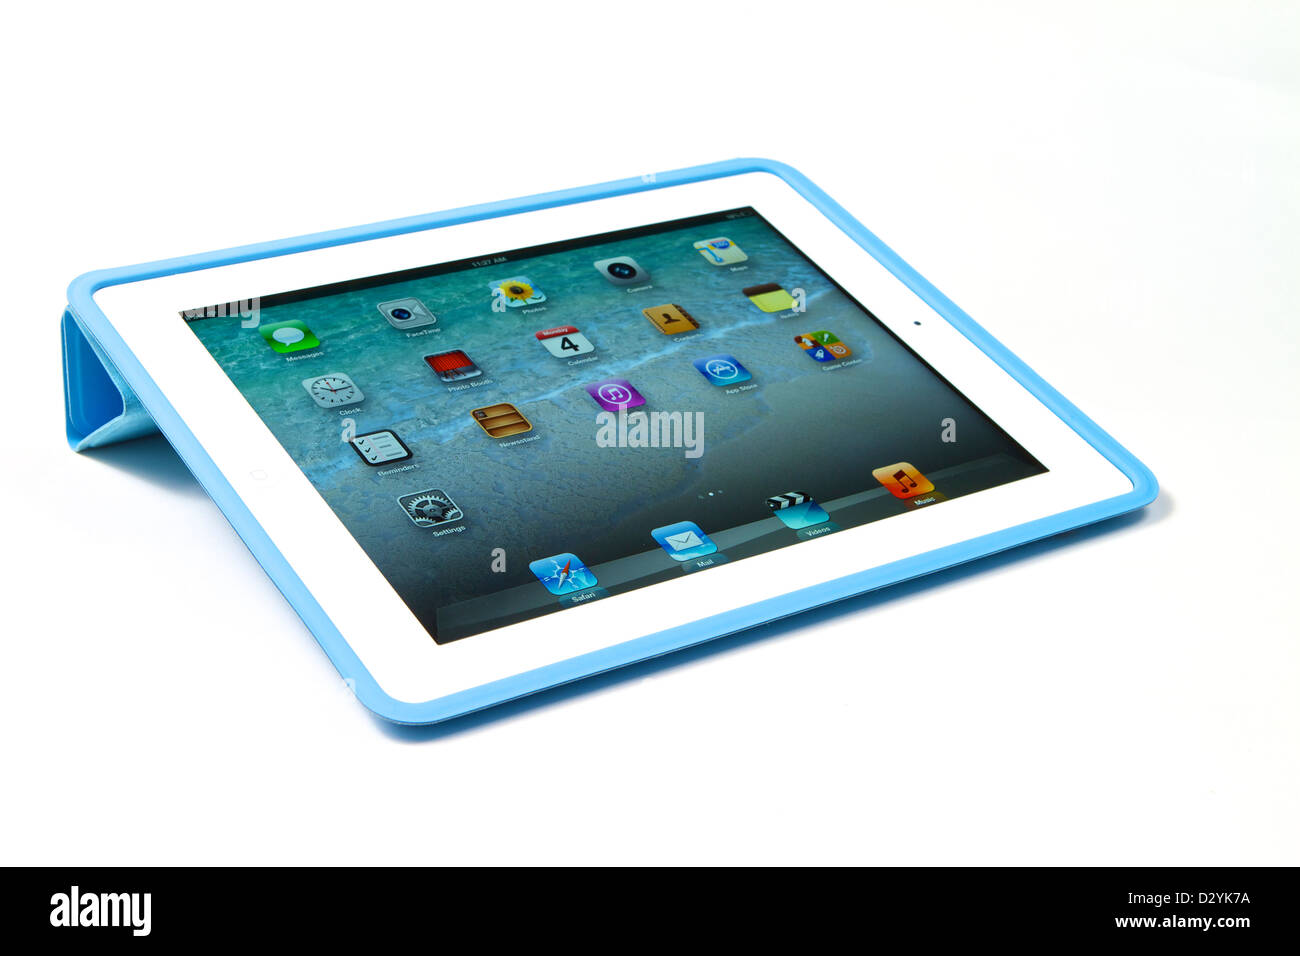 L'Ipad 3 avec écran retina dans un étui bleu sur fond blanc Banque D'Images